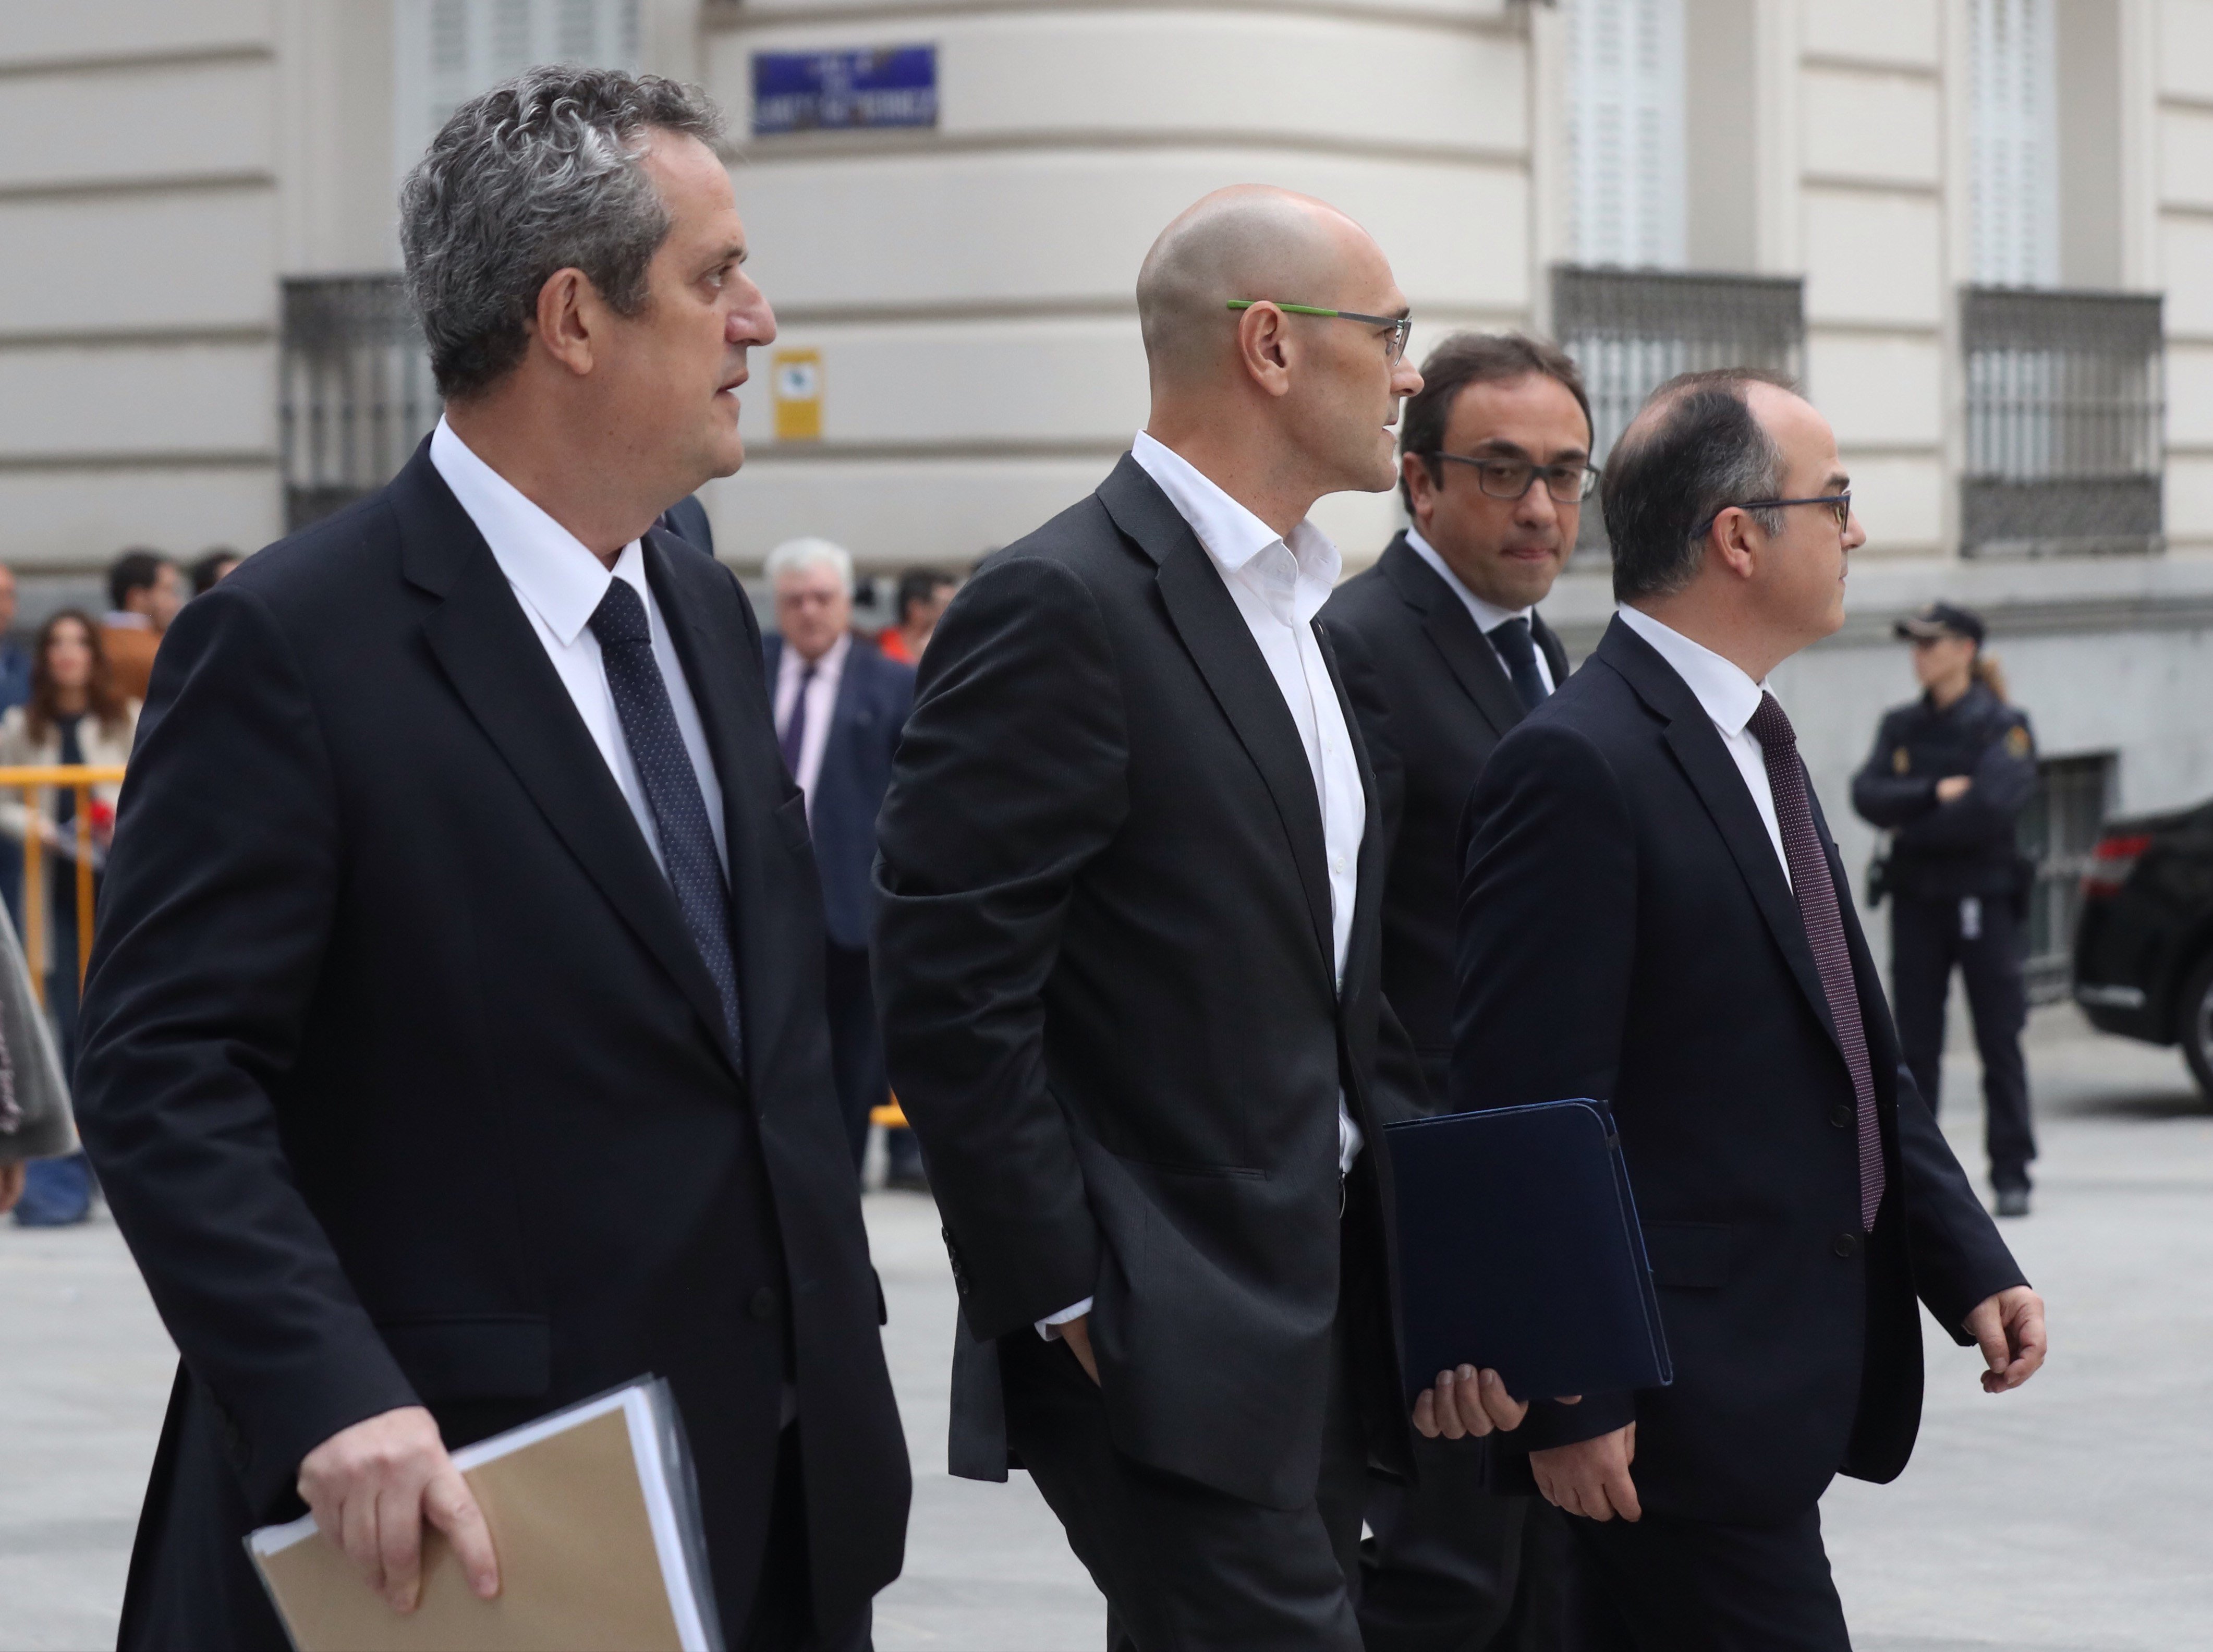 L'advocat de Puigdemont: "En 33 anys de professió no havia sentit tanta indefensió"